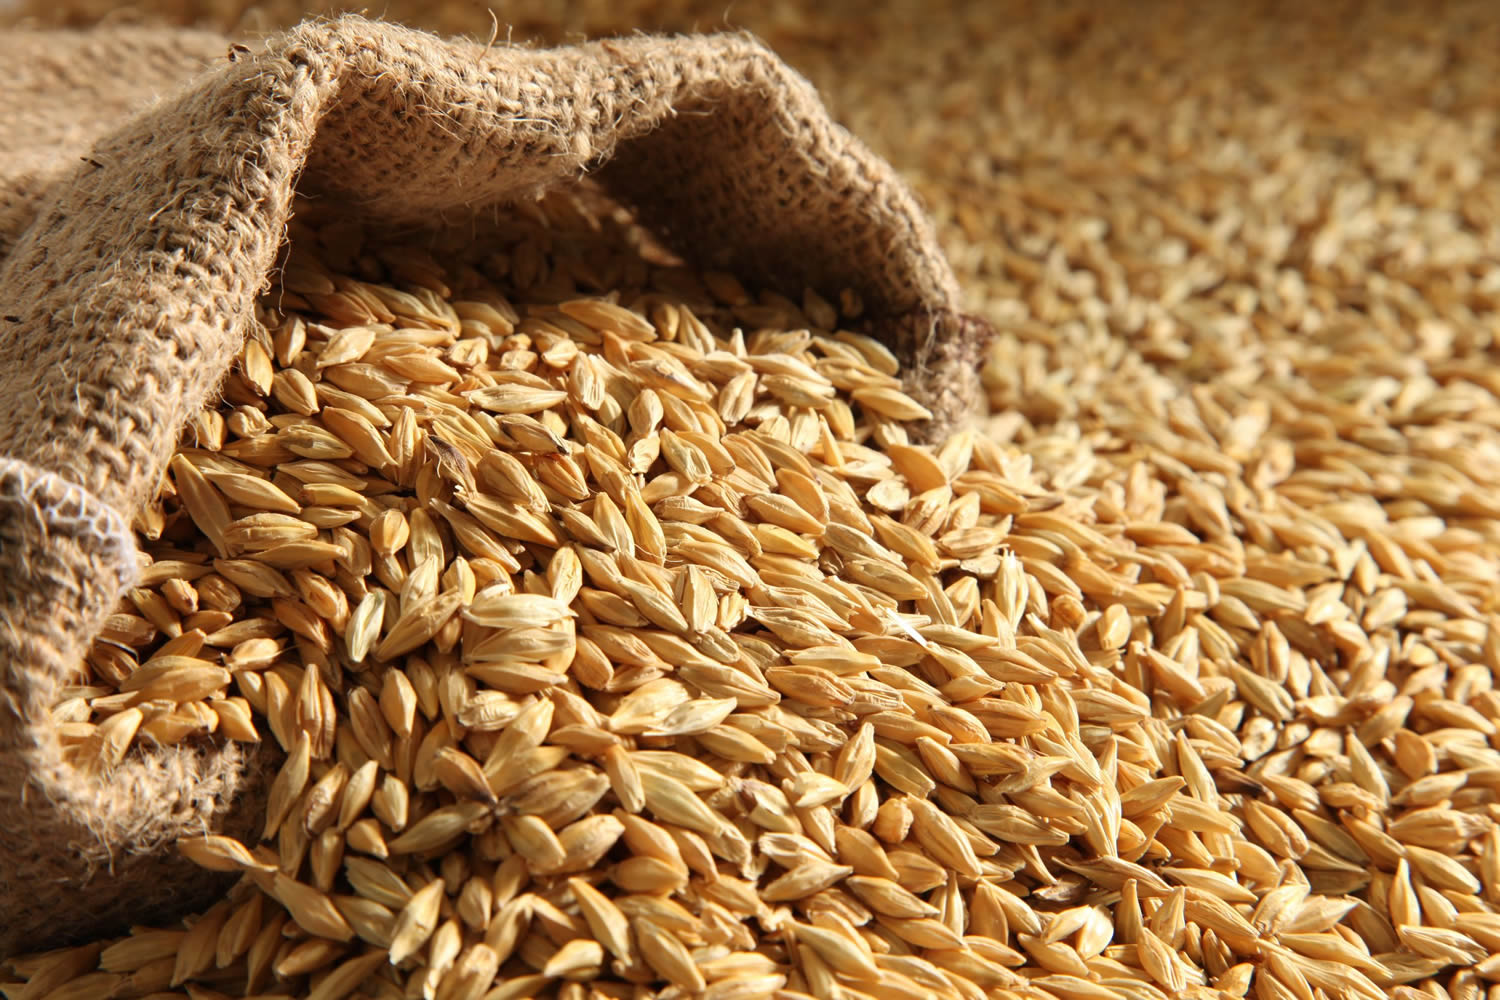 The Barley Malting Process – Steeping